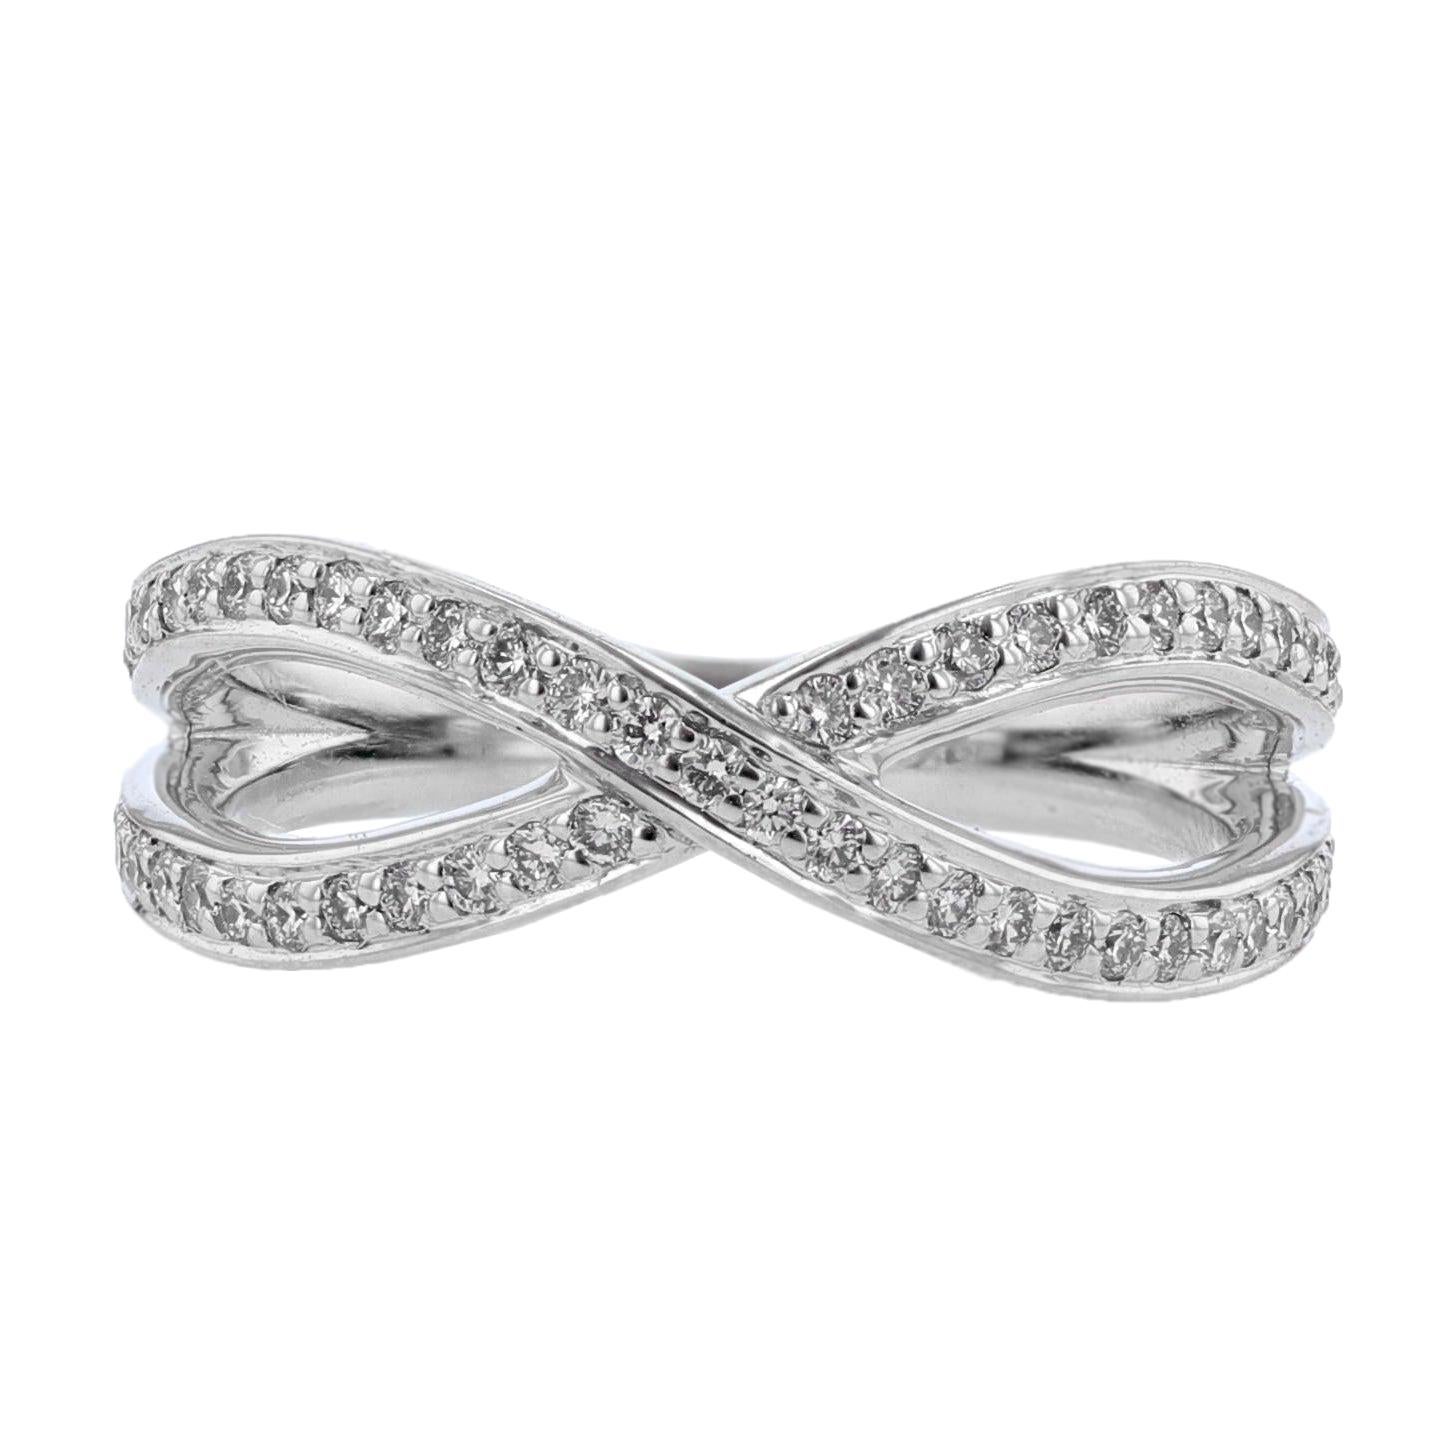 Nazarelle 18 Karat White Gold Criss Cross Diamond Ring For Sale